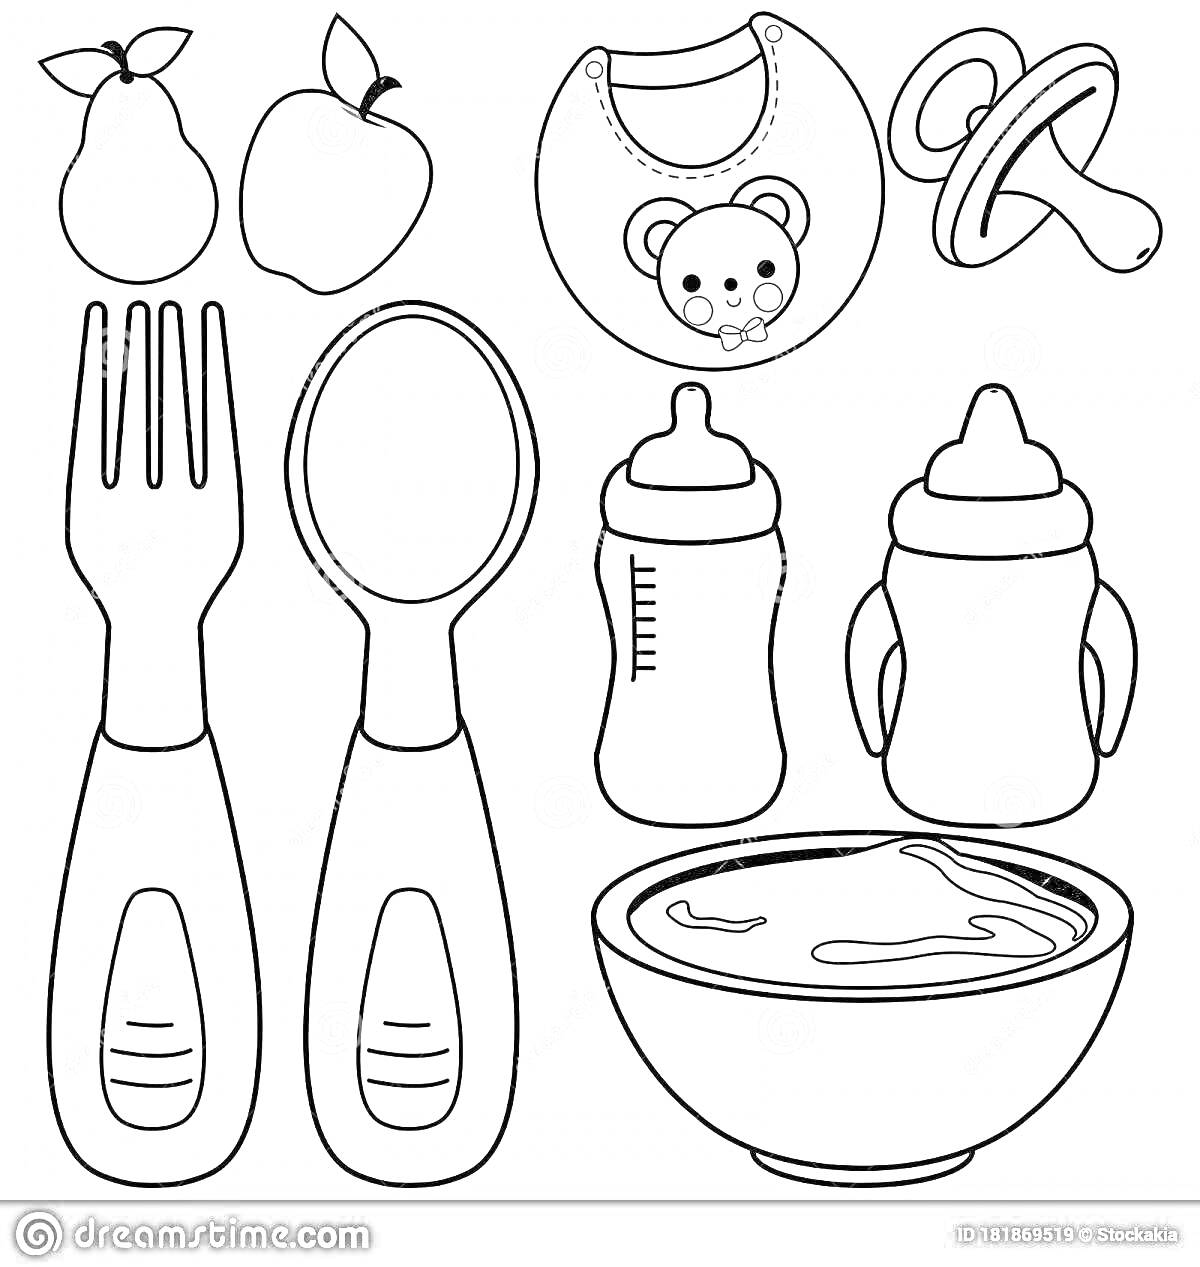 Раскраска груши, яблоко, слюнявчик с медвежонком, пустышка, вилка, ложка, две детские бутылочки, миска с супом